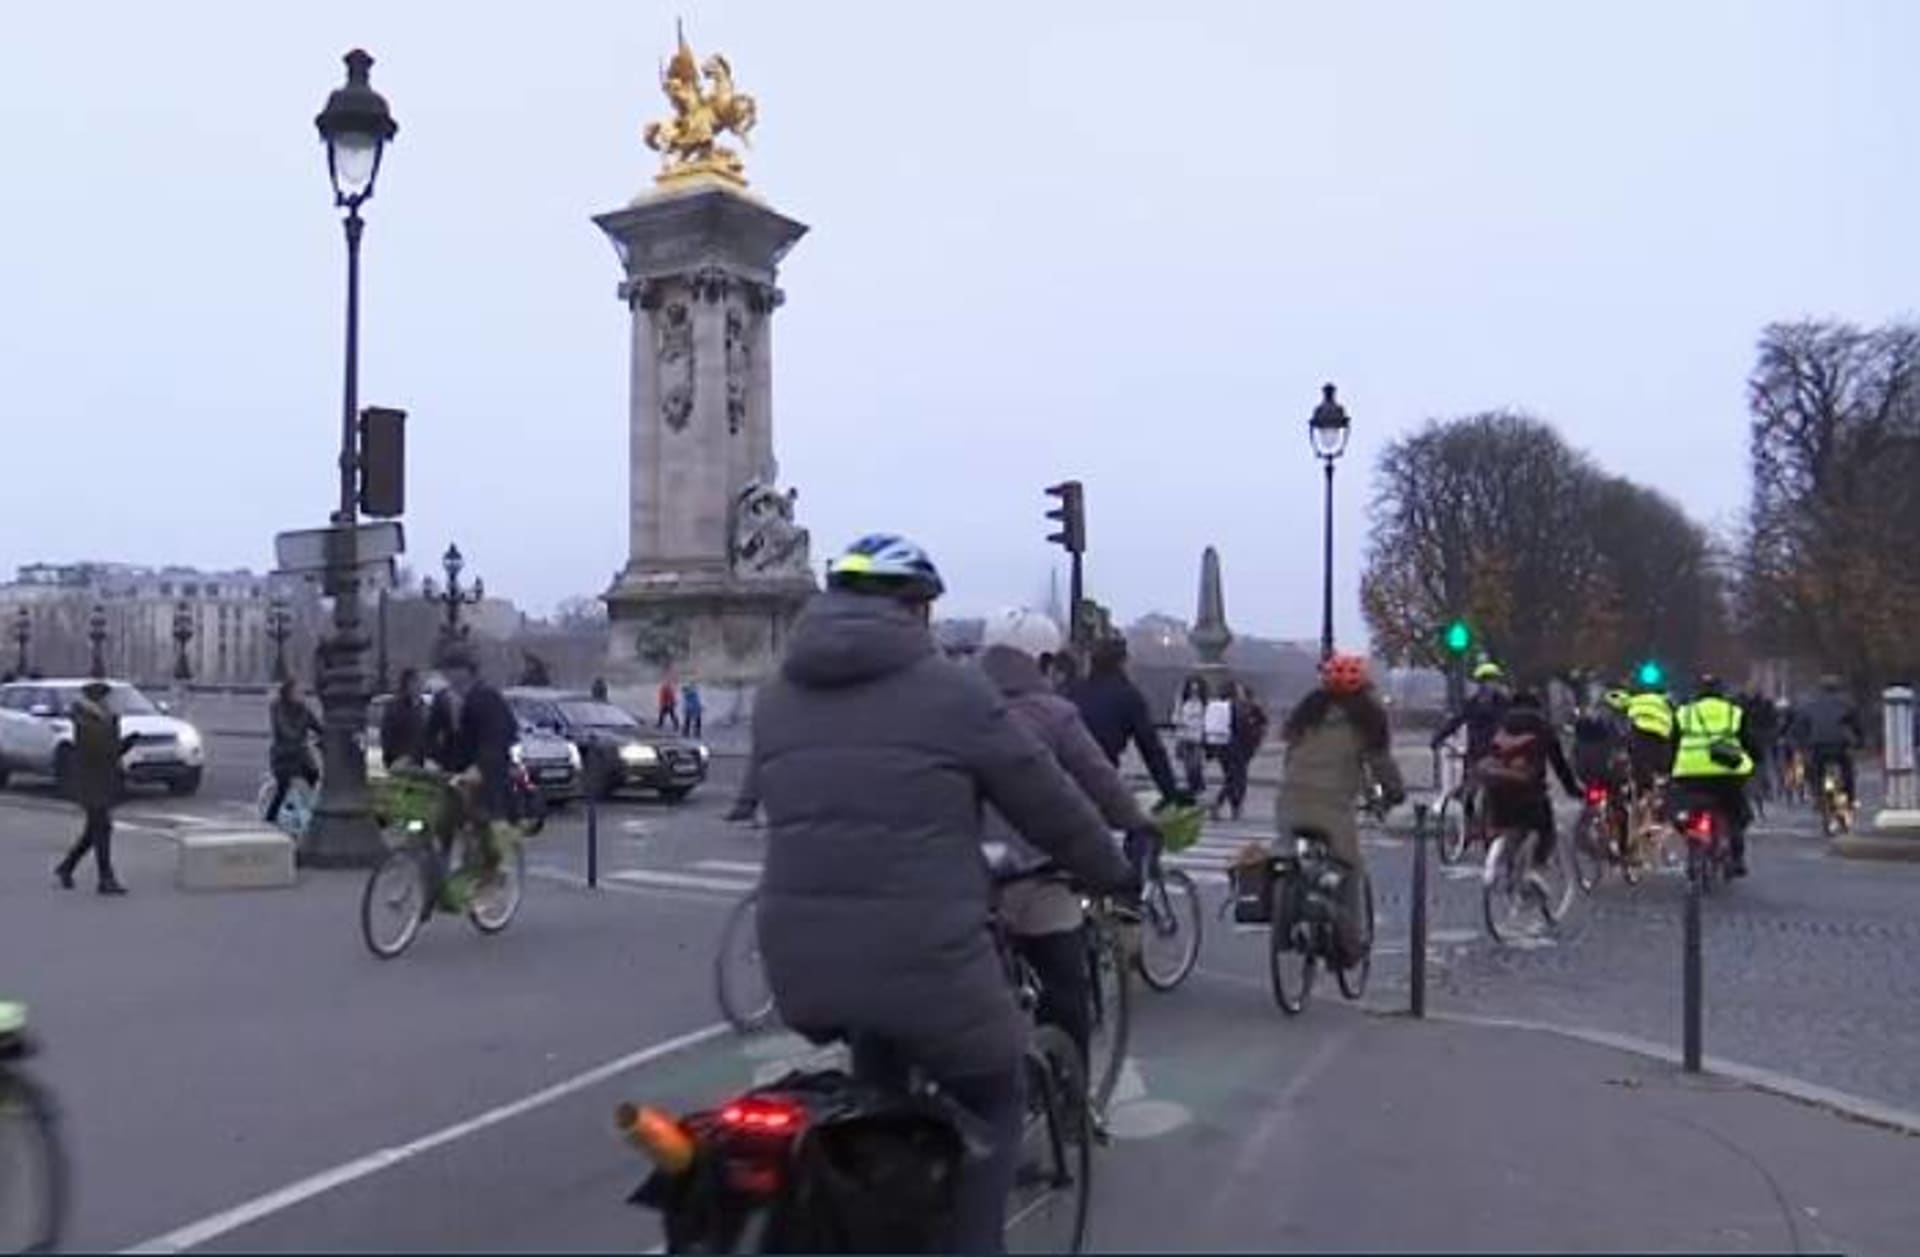 Kolo se stalo v Paříži hlavním dopravním prostředkem